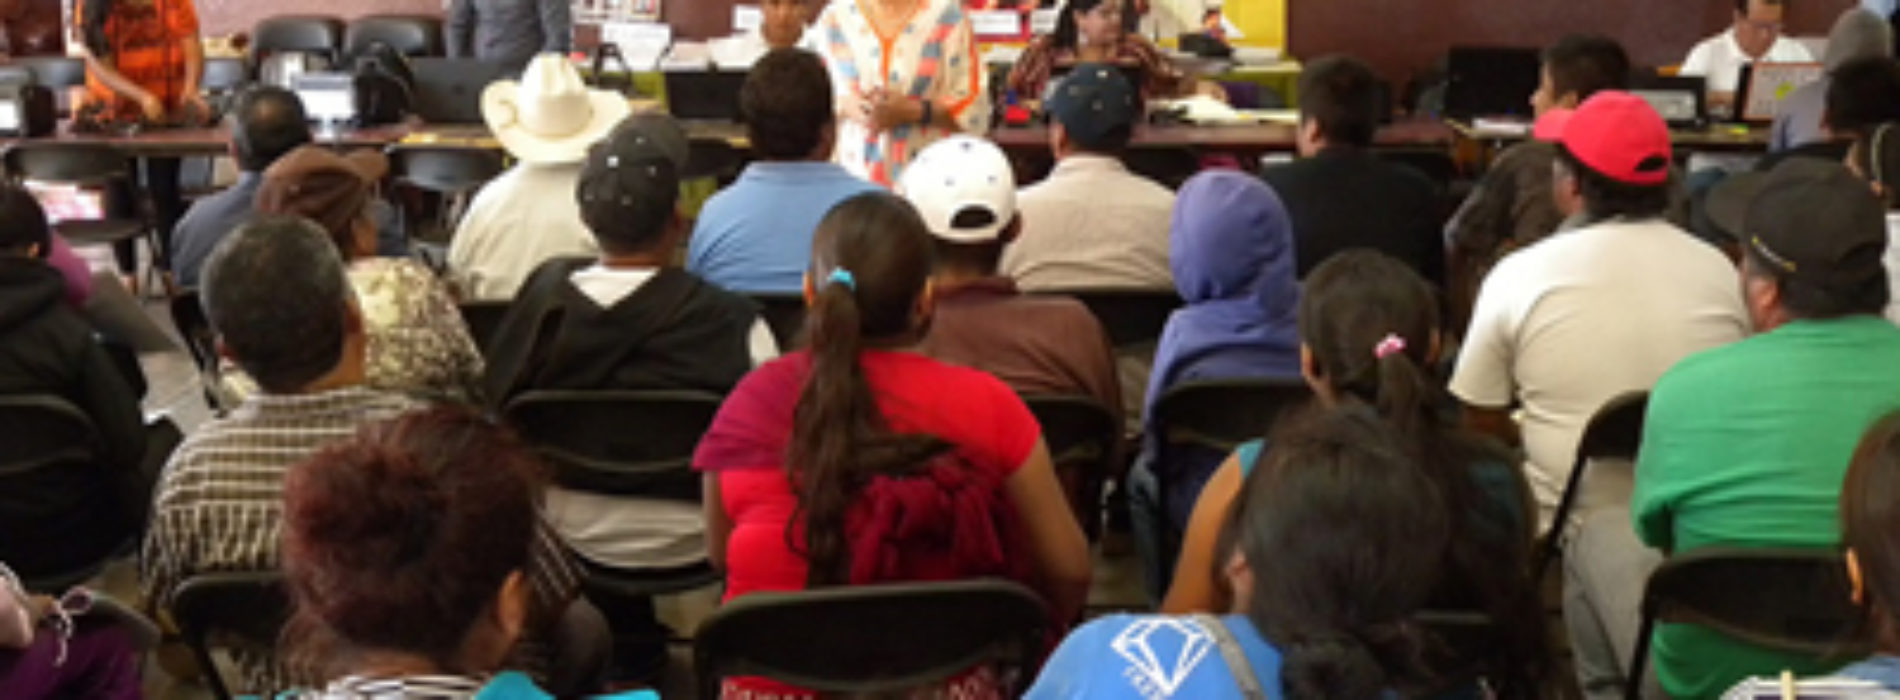 Acerca Registro Civil servicios registrales a jornaleros de San Quintín